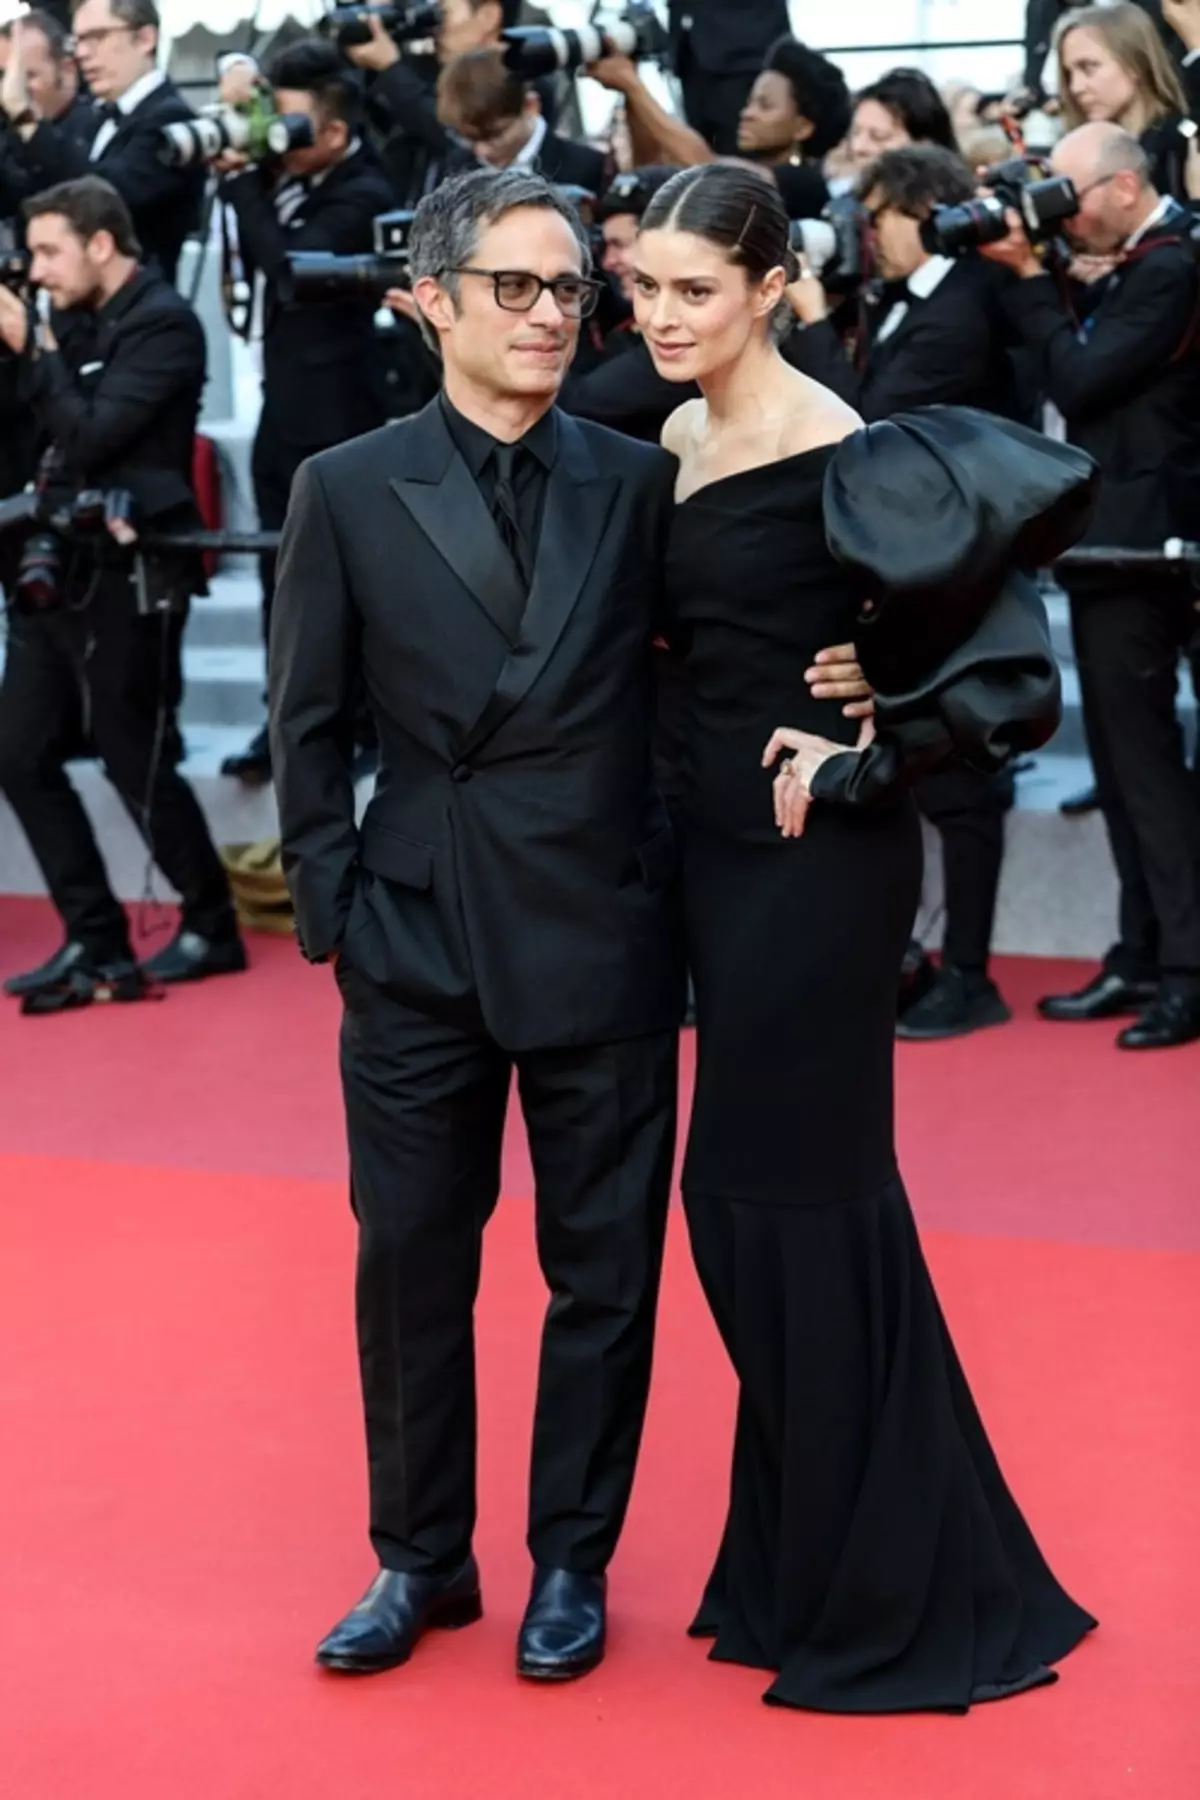 Foto: Viggo Mortensen, Vensean Kassel, Catherine Denev și alte stele la ceremonia de închidere a Festivalului Cannes 2019 41459_11